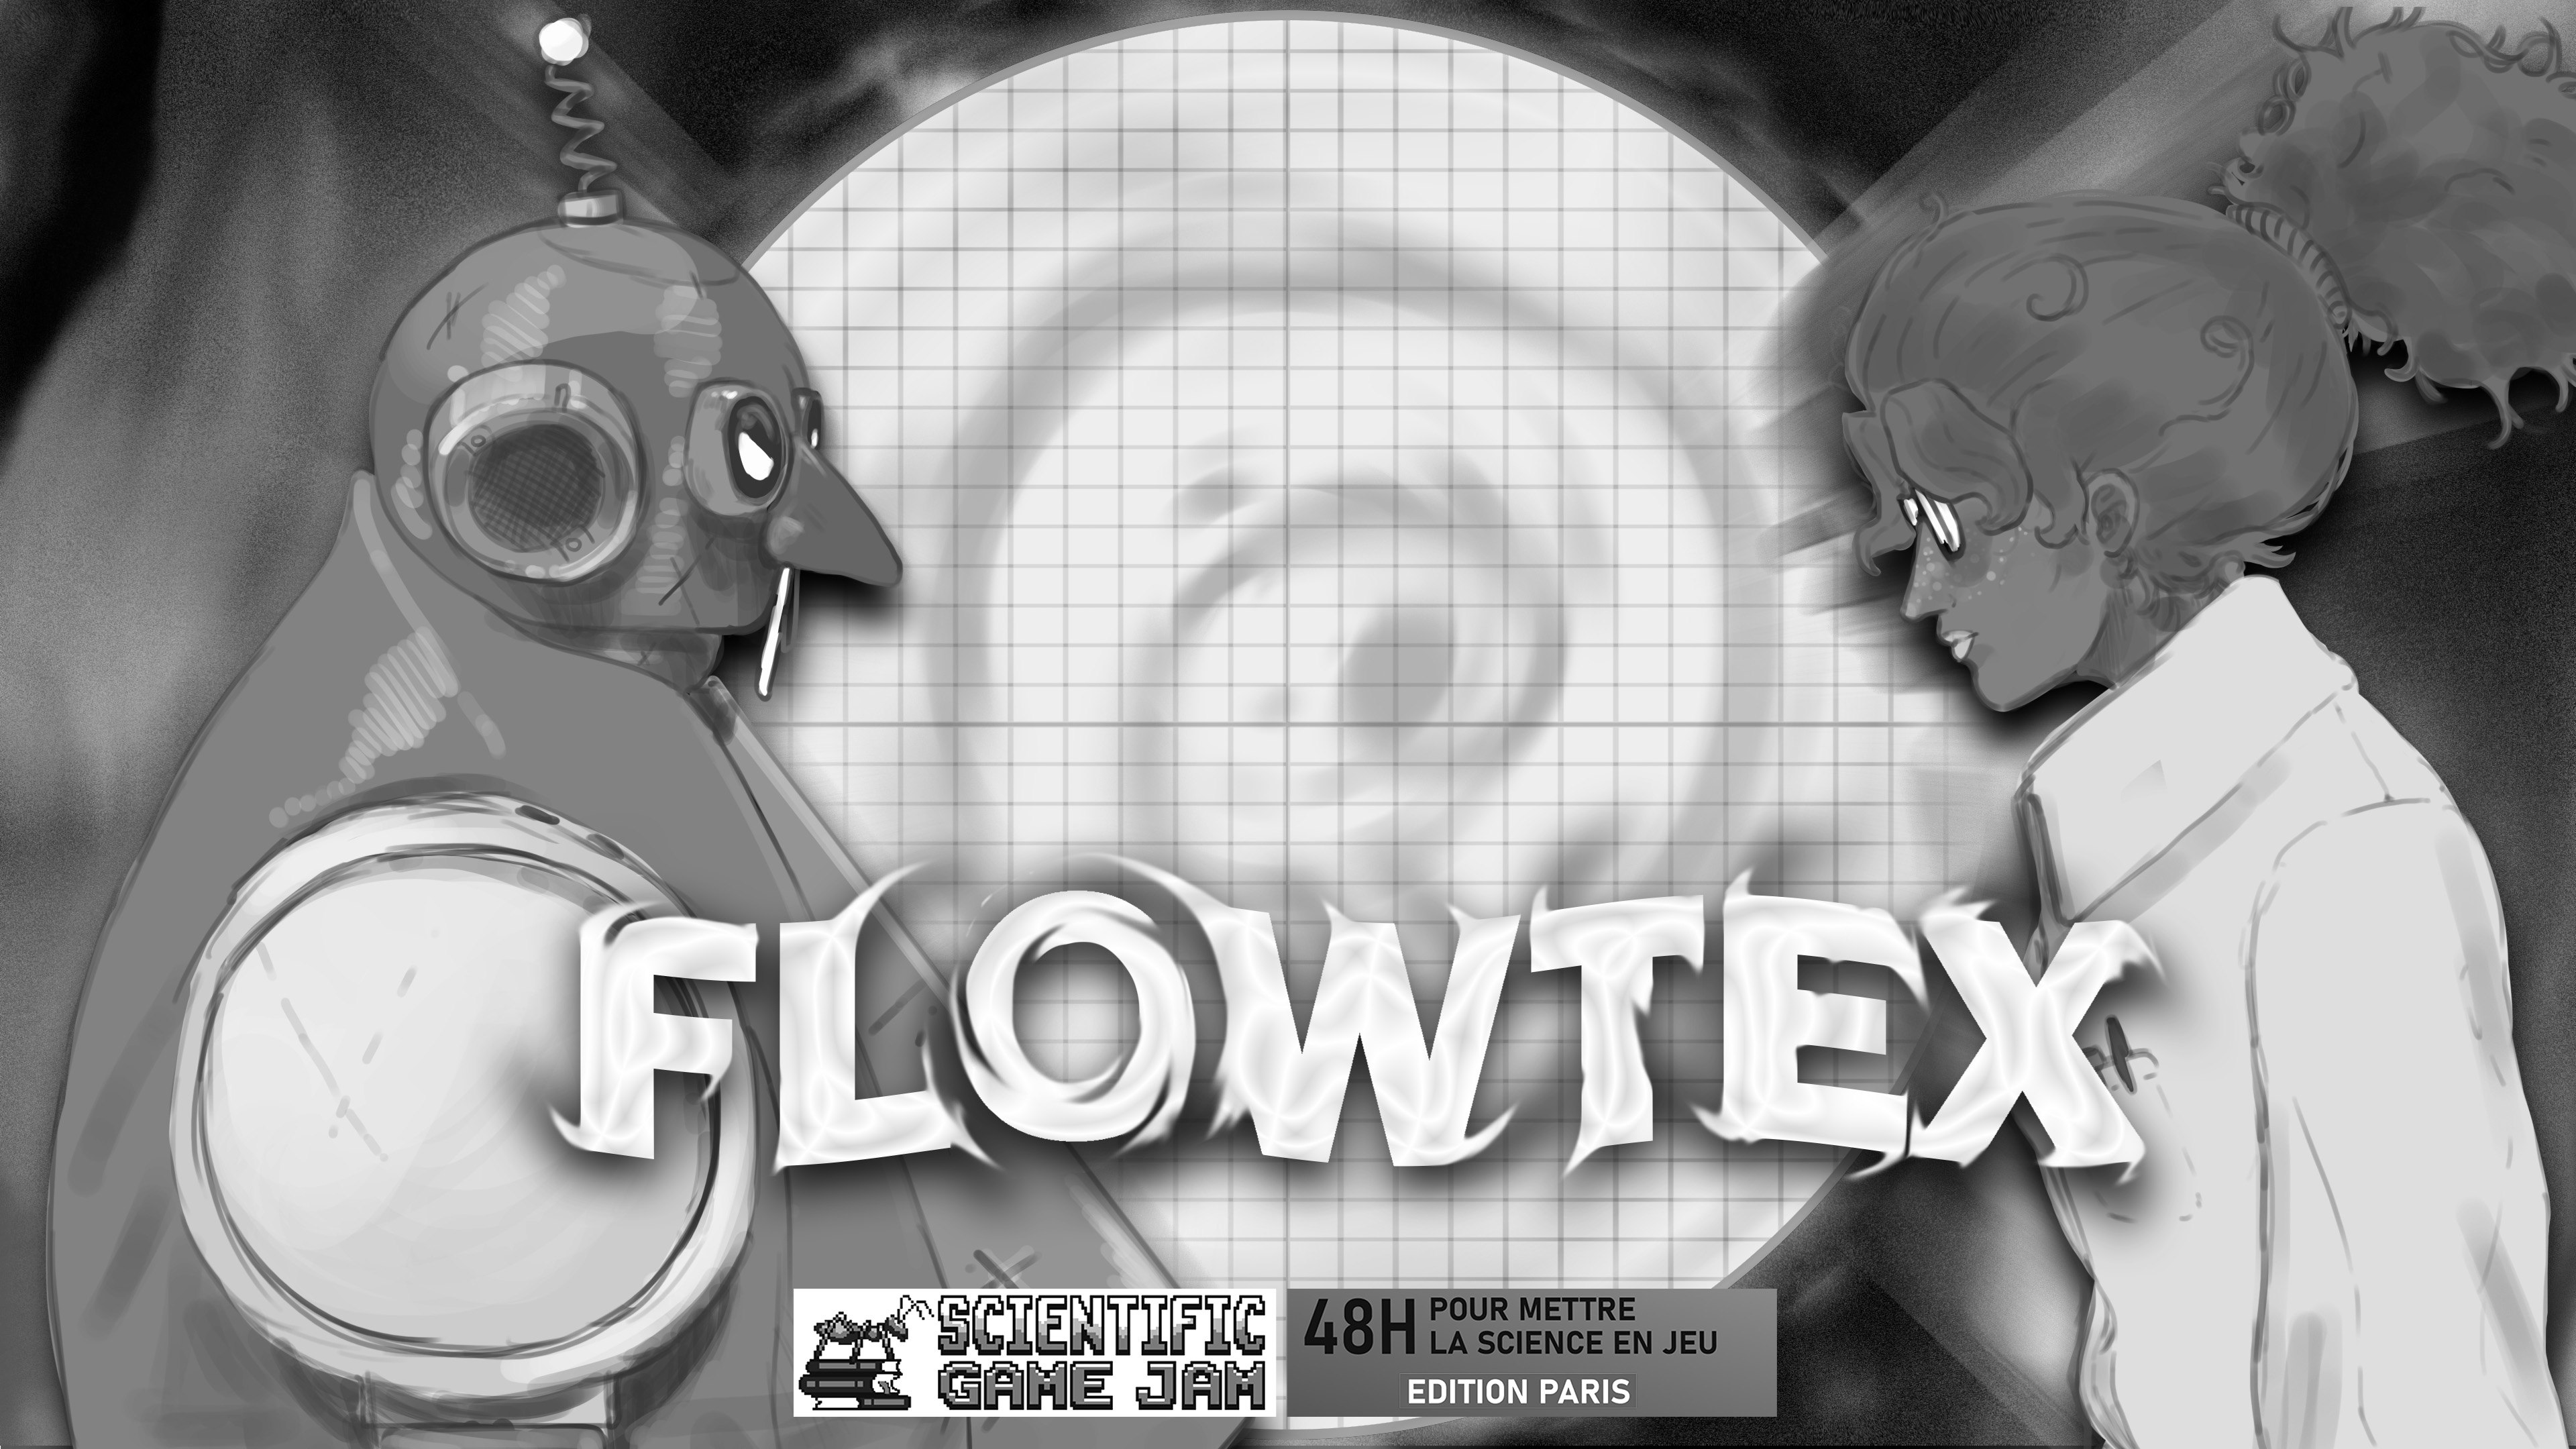 FLOWTEX